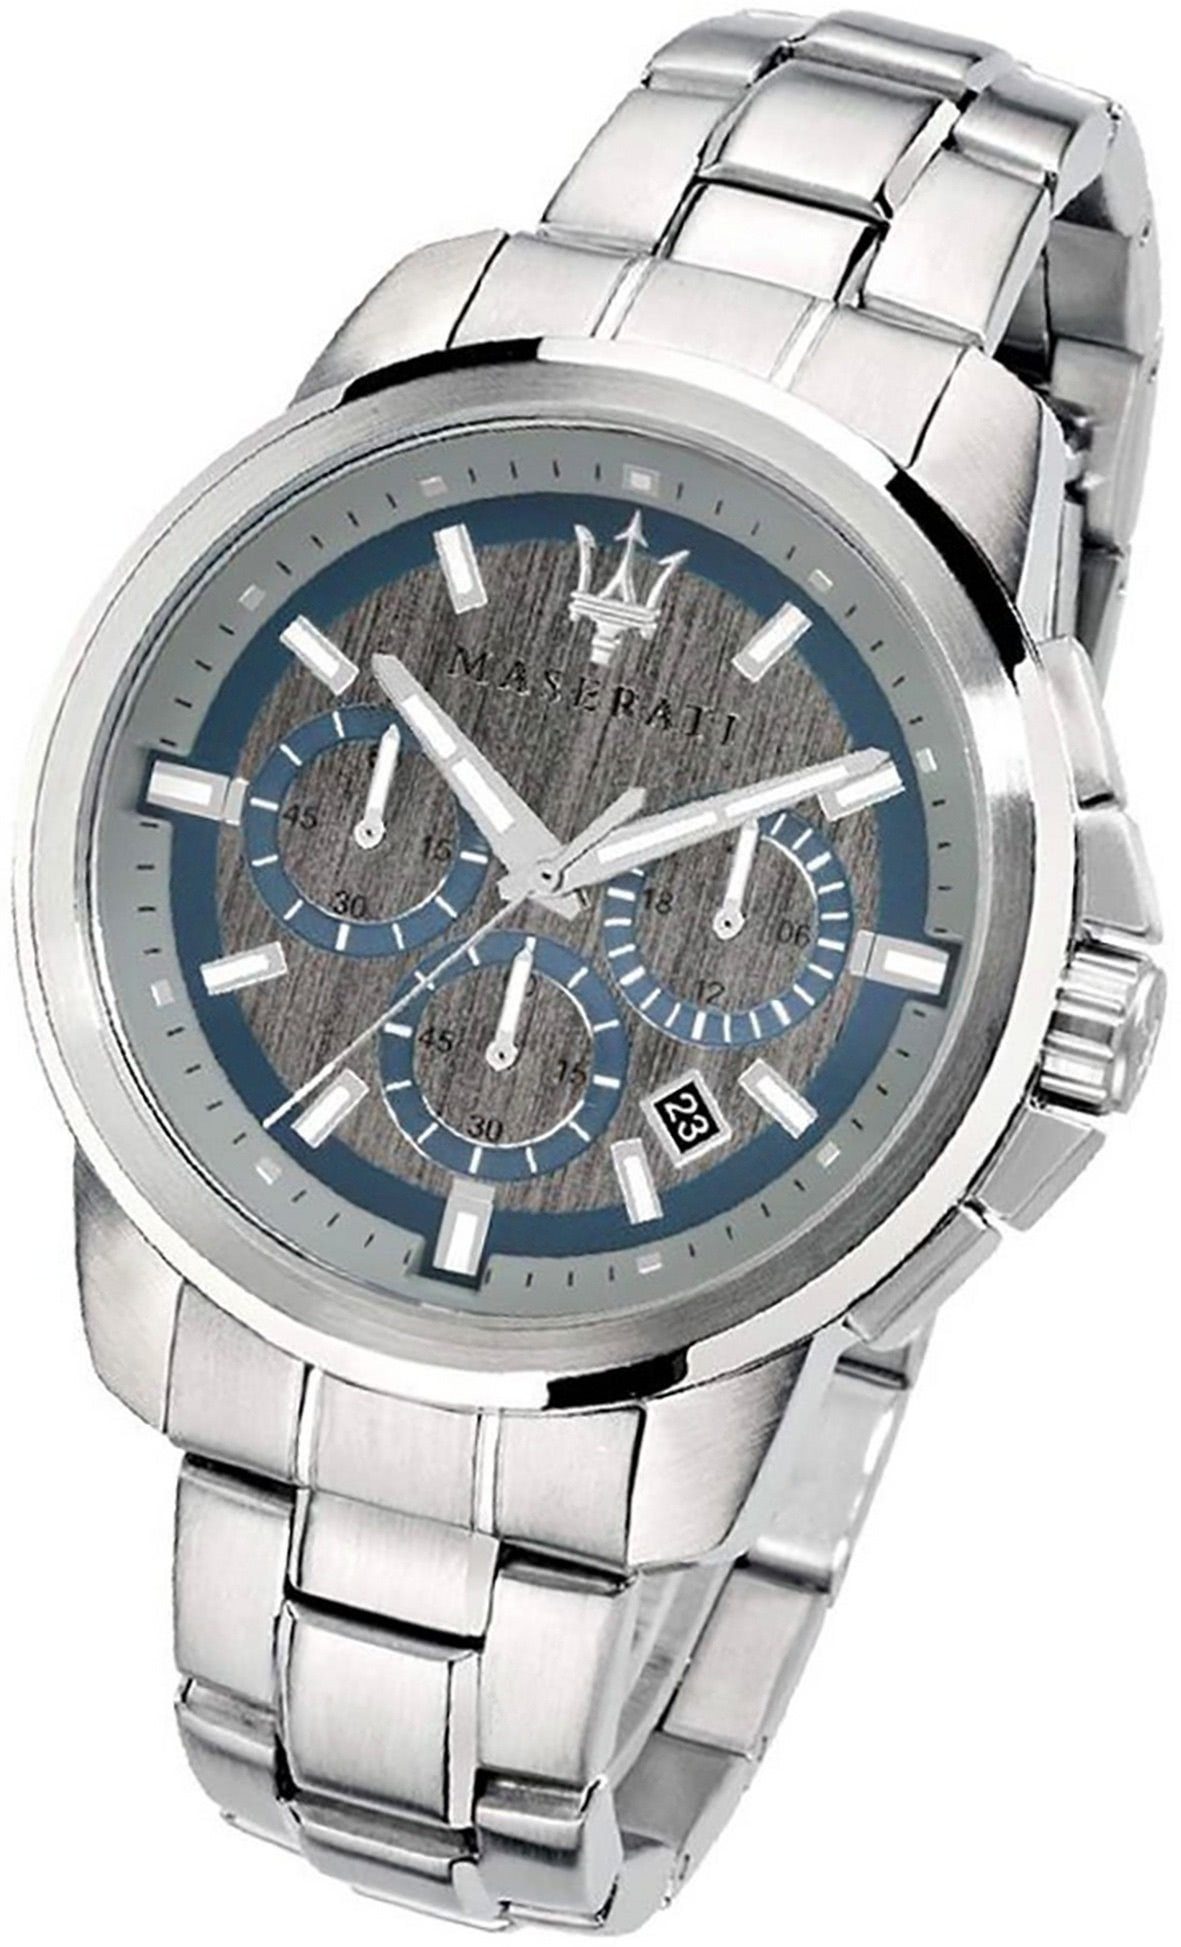 MASERATI Chronograph Maserati Edelstahl Armband-Uhr, Herrenuhr rundes Gehäuse, groß silber (ca. Edelstahlarmband, 52x44mm)